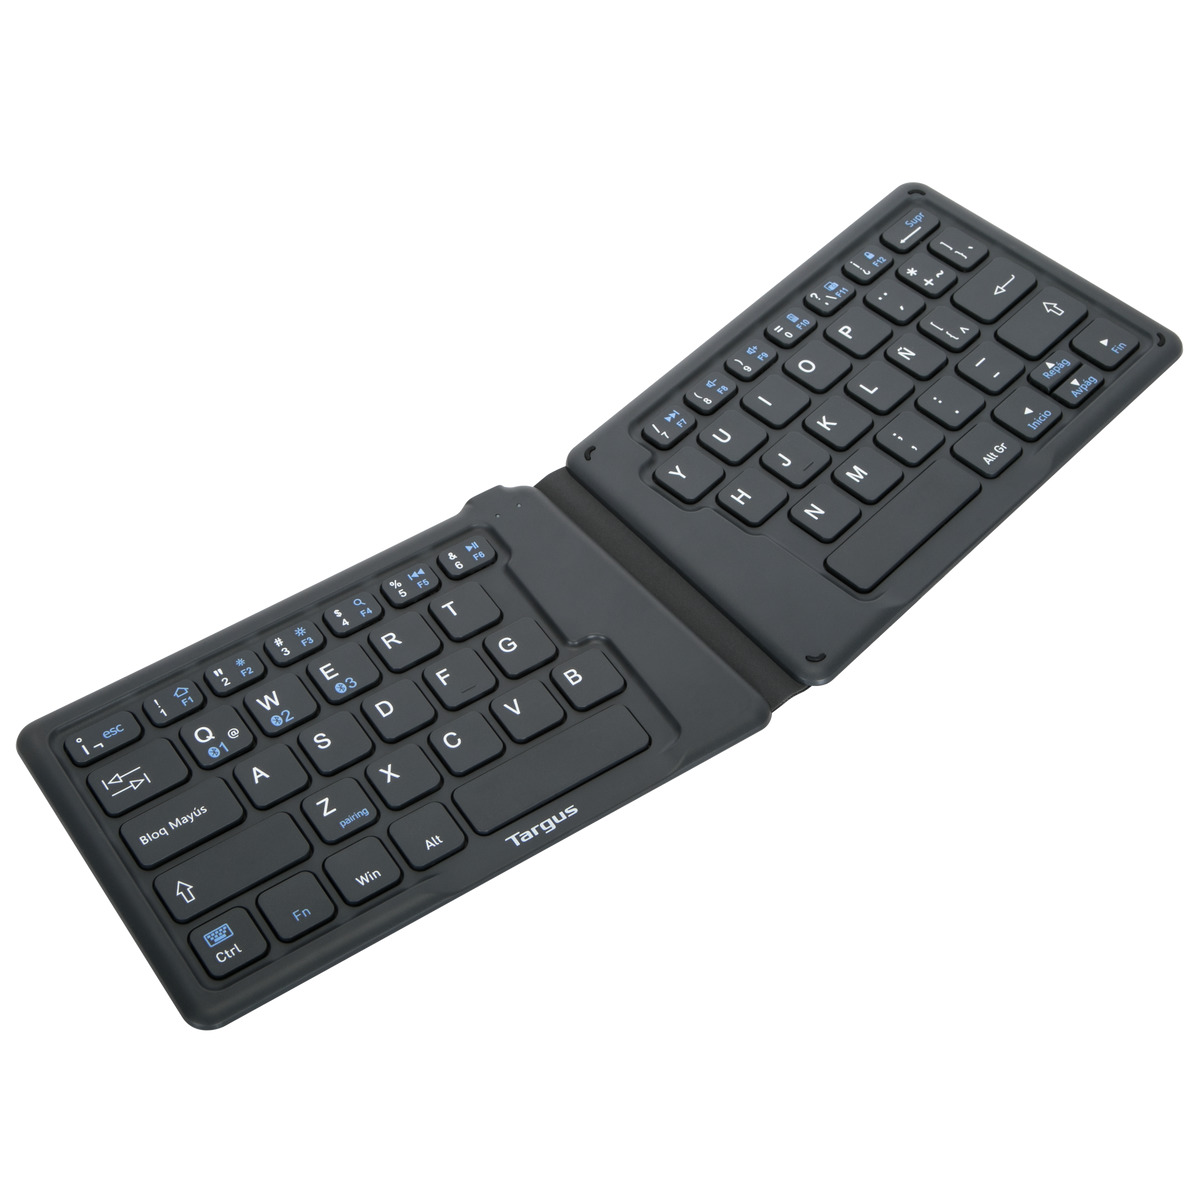 Teclado español resistente portátil teclado para teléfono móvil